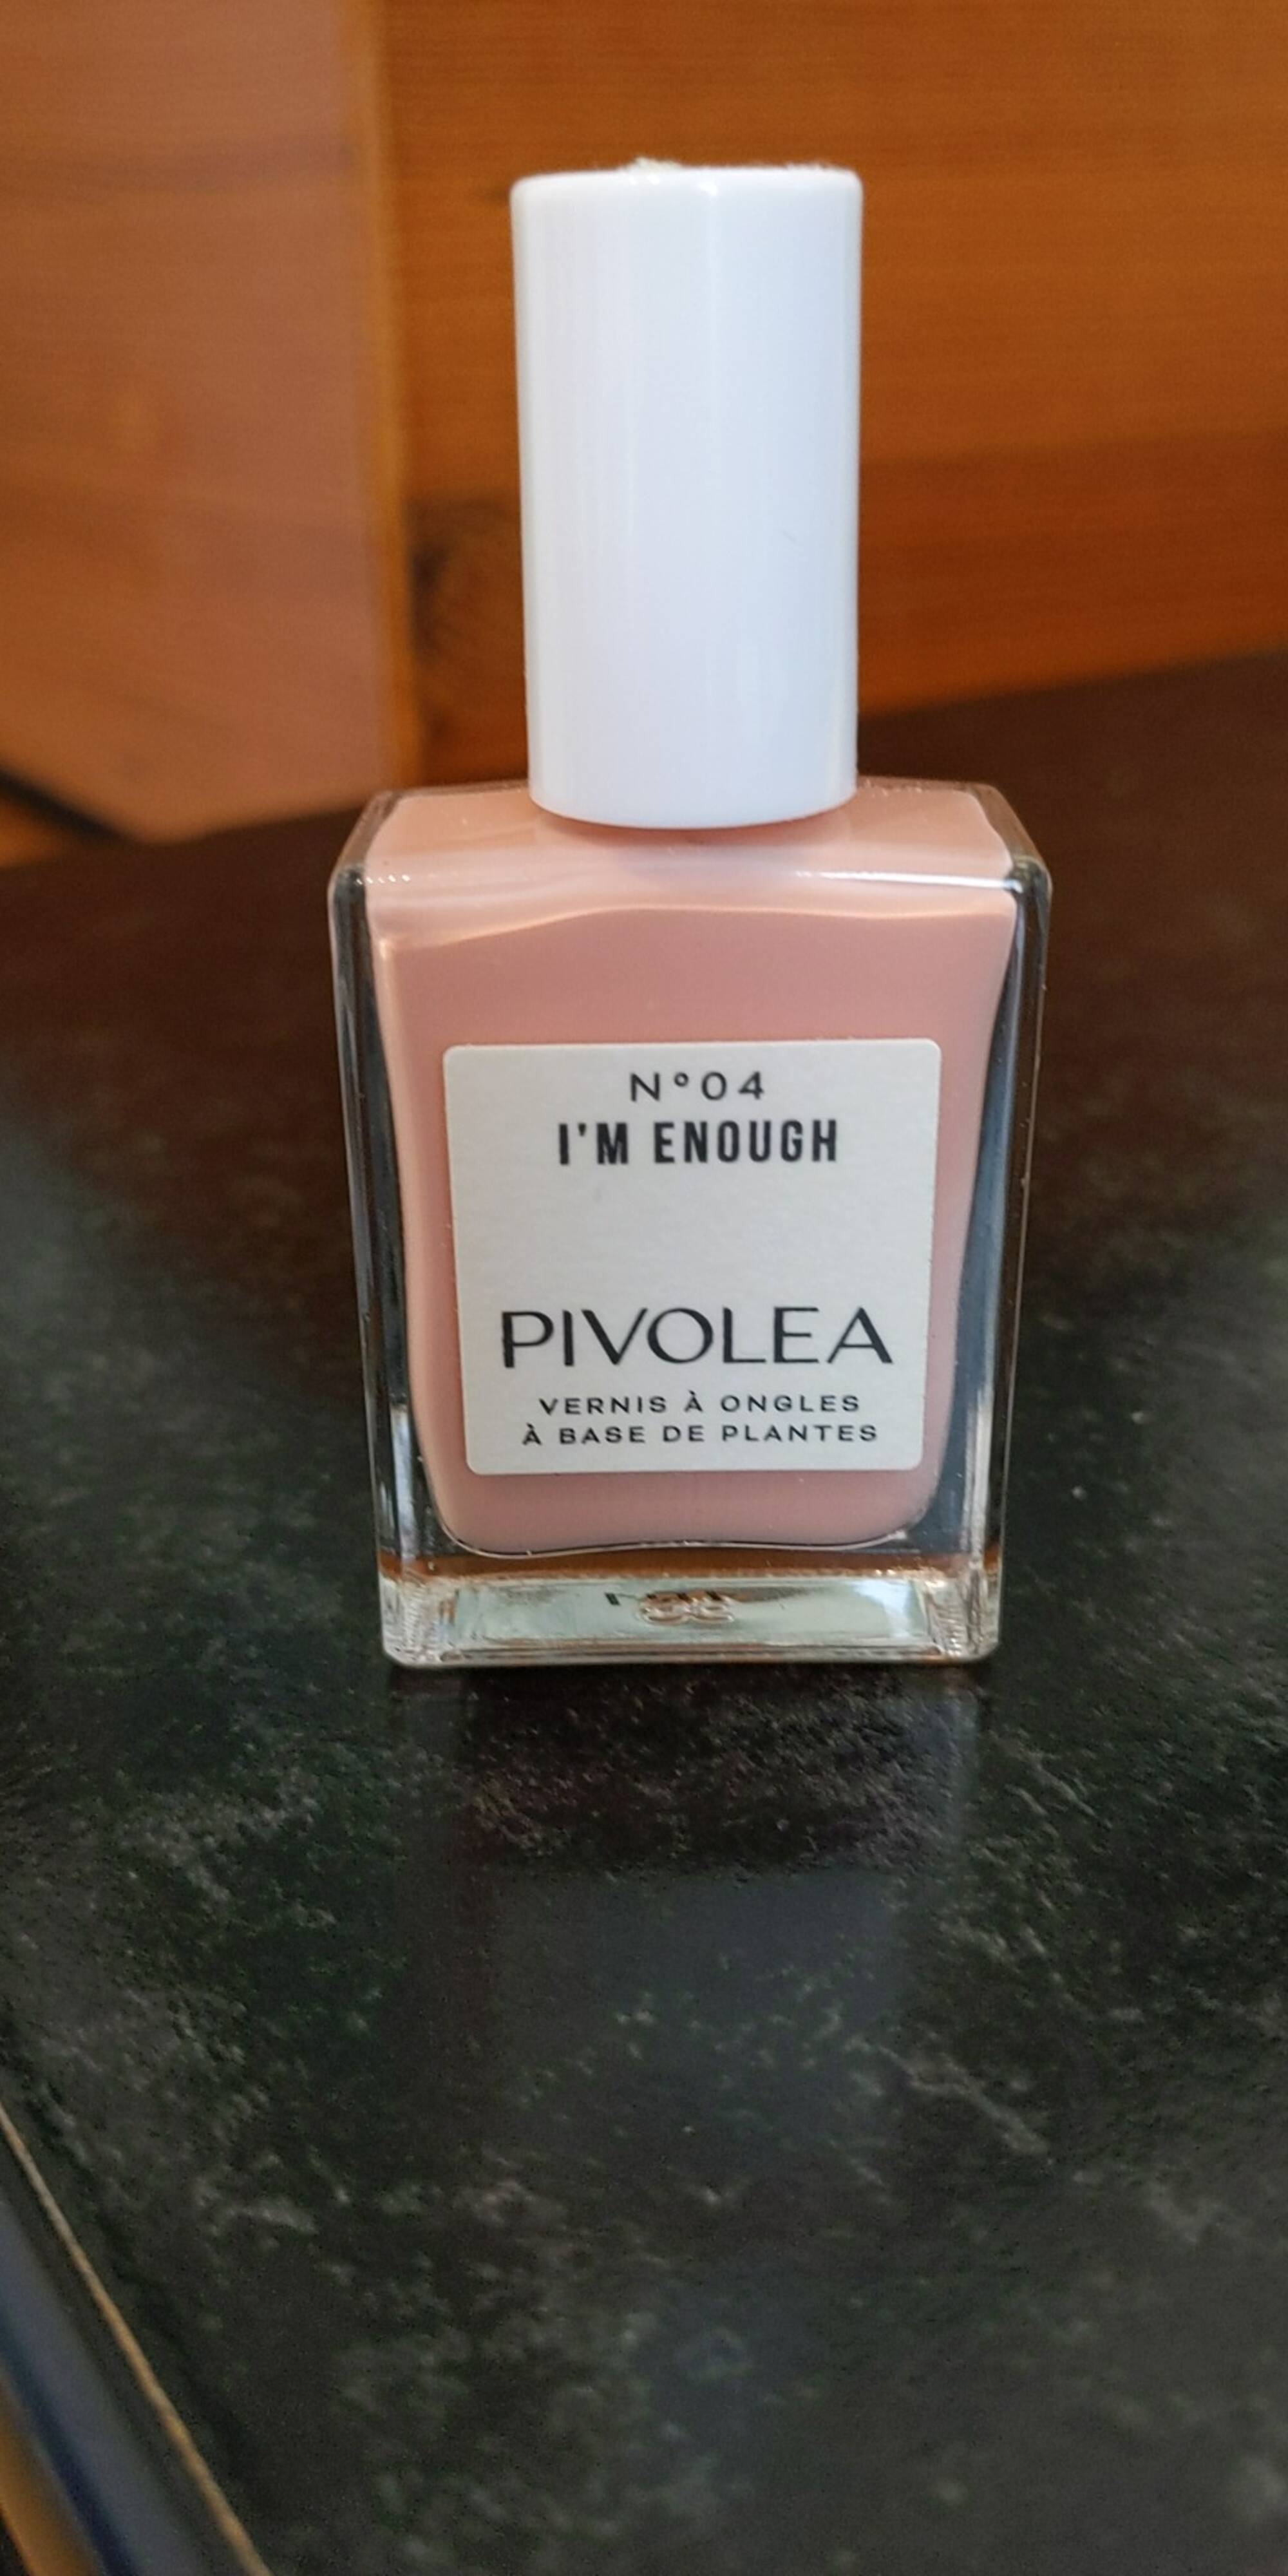 PIVOLEA - I'm enough - Vernis à ongles à base de plantes